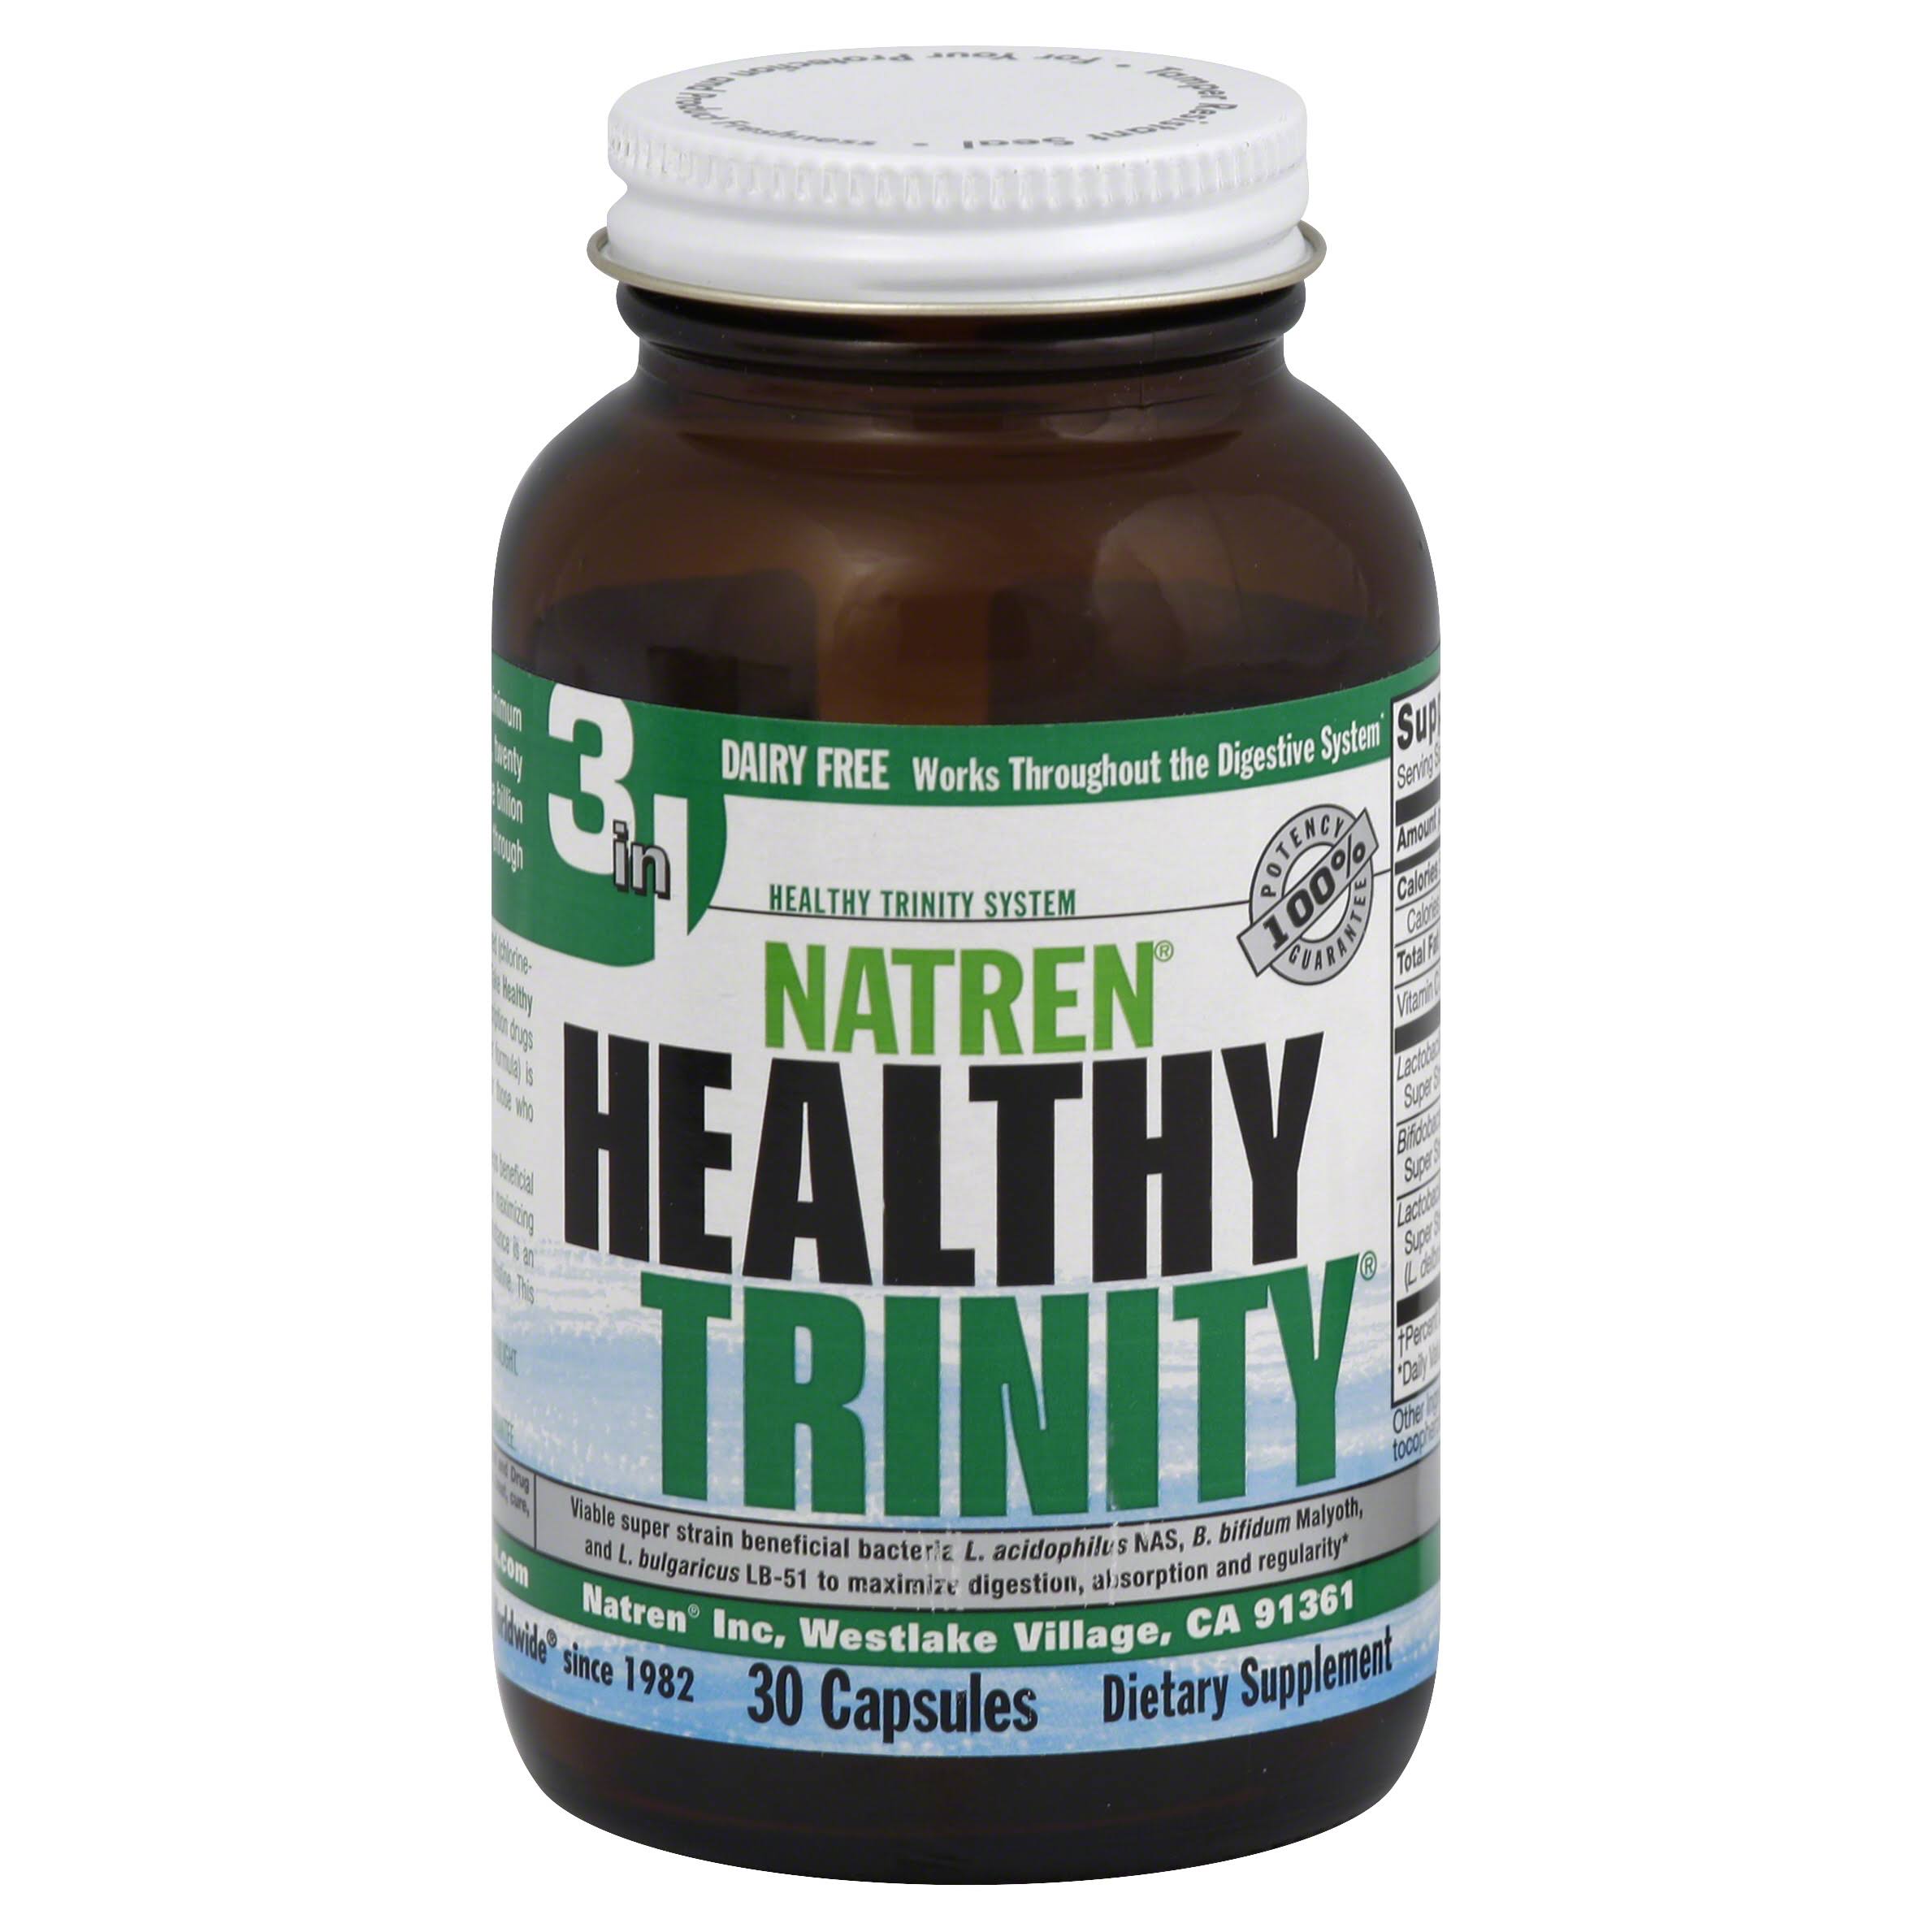 Natren Healthy Trinity Probiotic Supplement - 30 Capsules